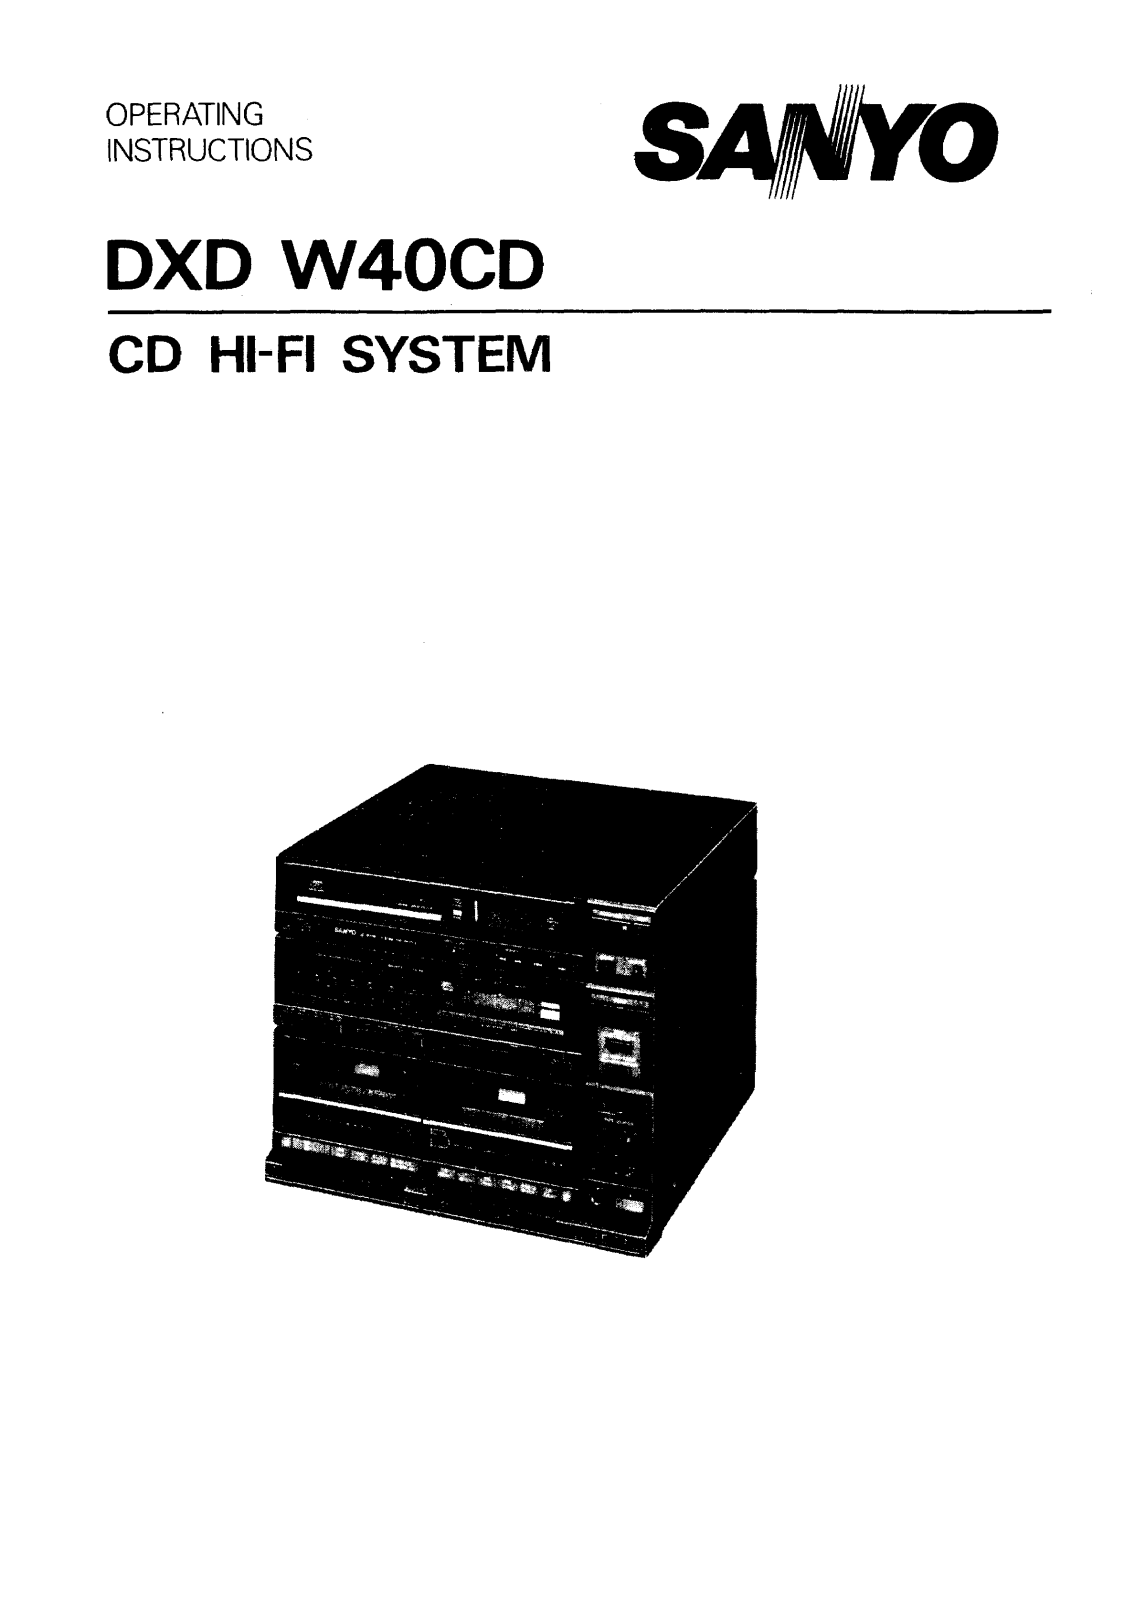 Sanyo DXD W40CD Instruction Manual